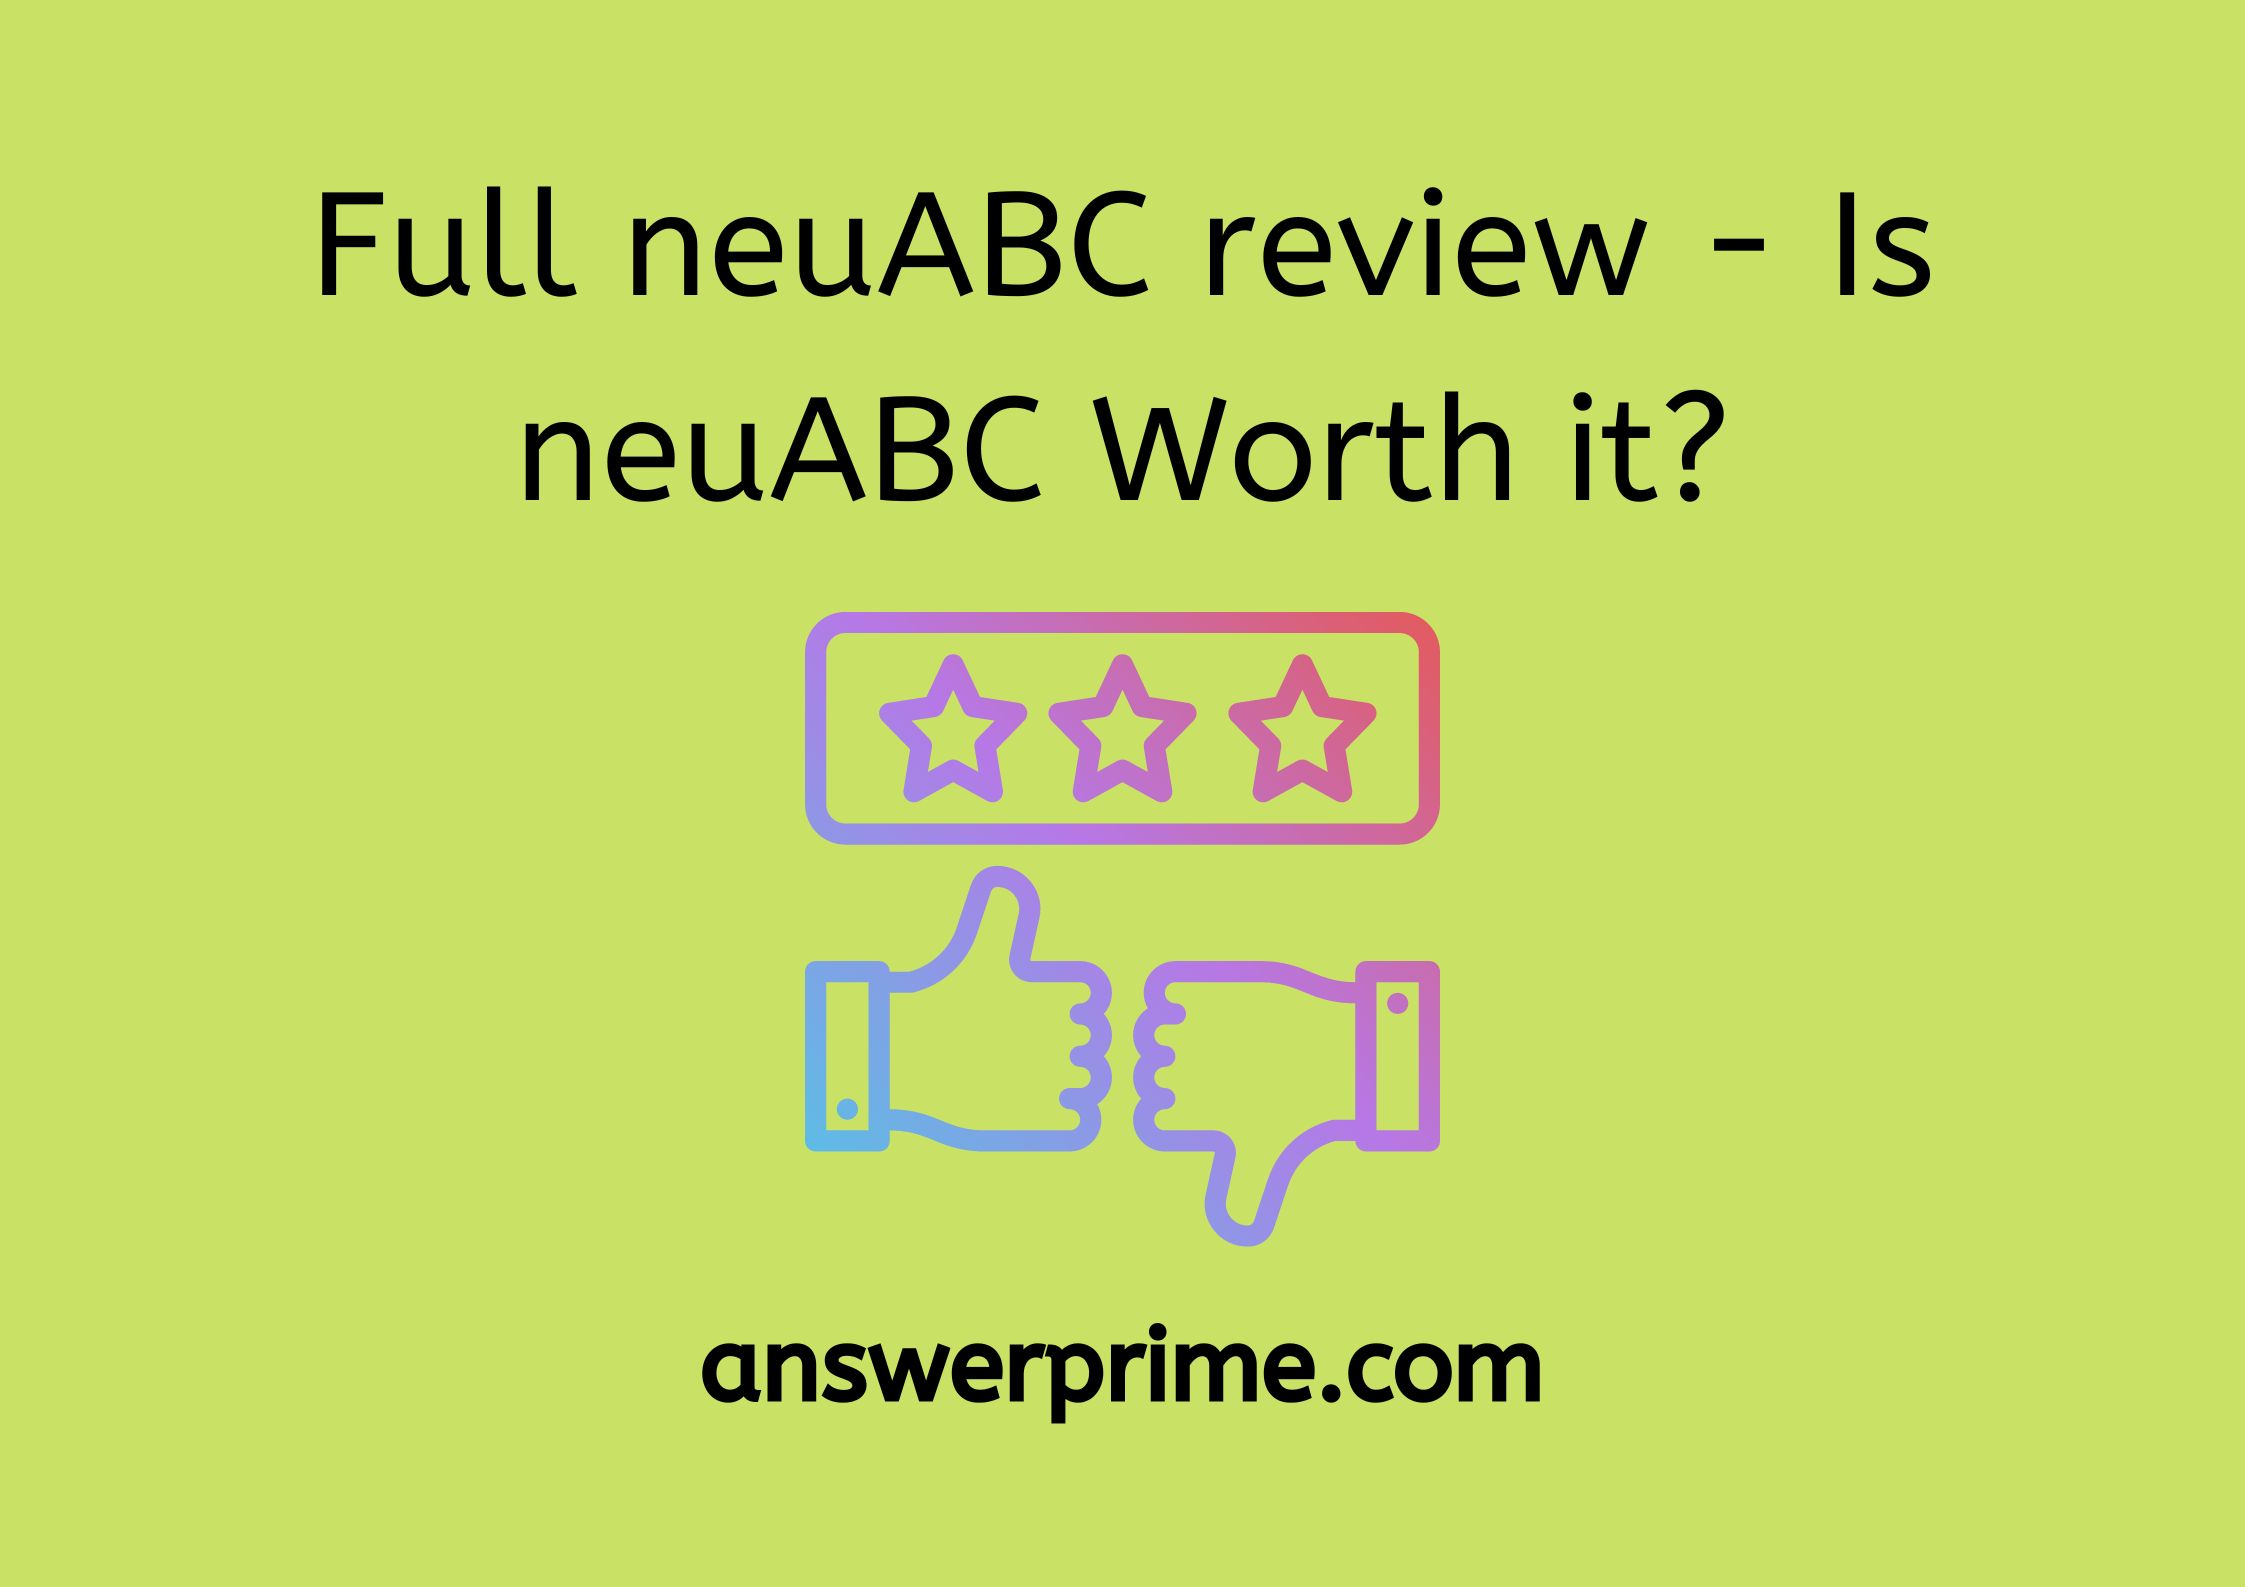 Full neuABC review - Is neuABC Worth it?